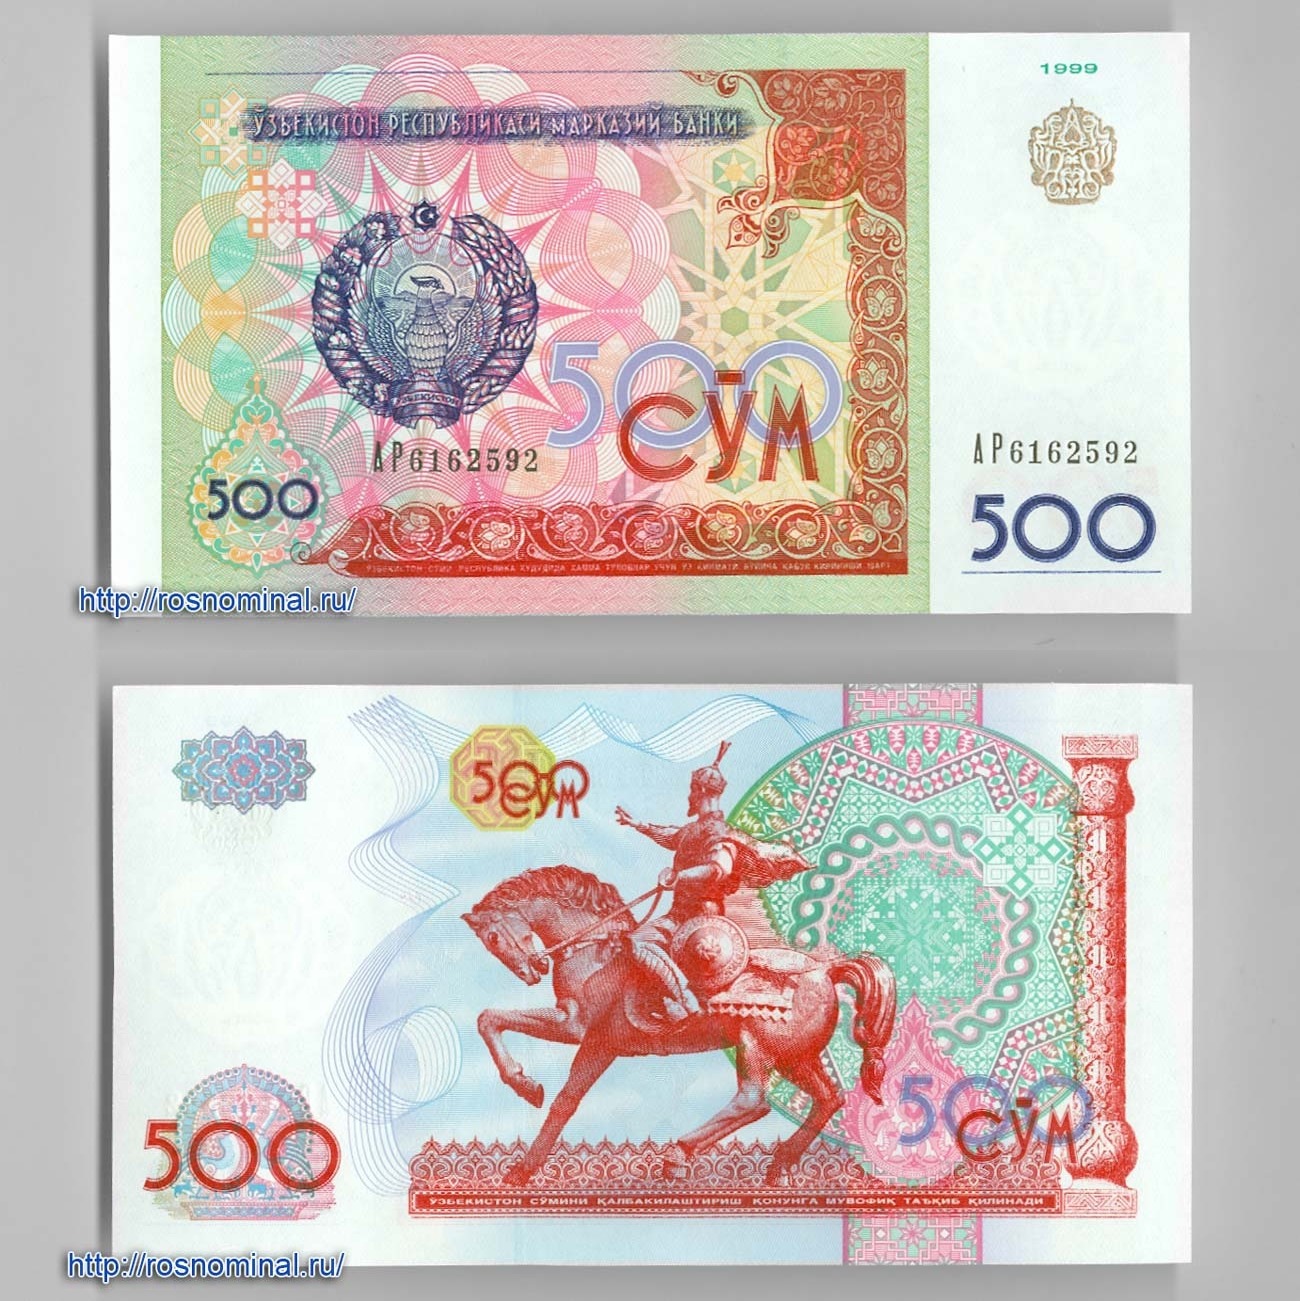 Сколько руб стоит узбекский сум. 500 Сум Узбекистан купюра. Узбекский сум банкноты500 Сумав 1994. 500 Сум купюра. Узбекистананская купюра 500 сум.